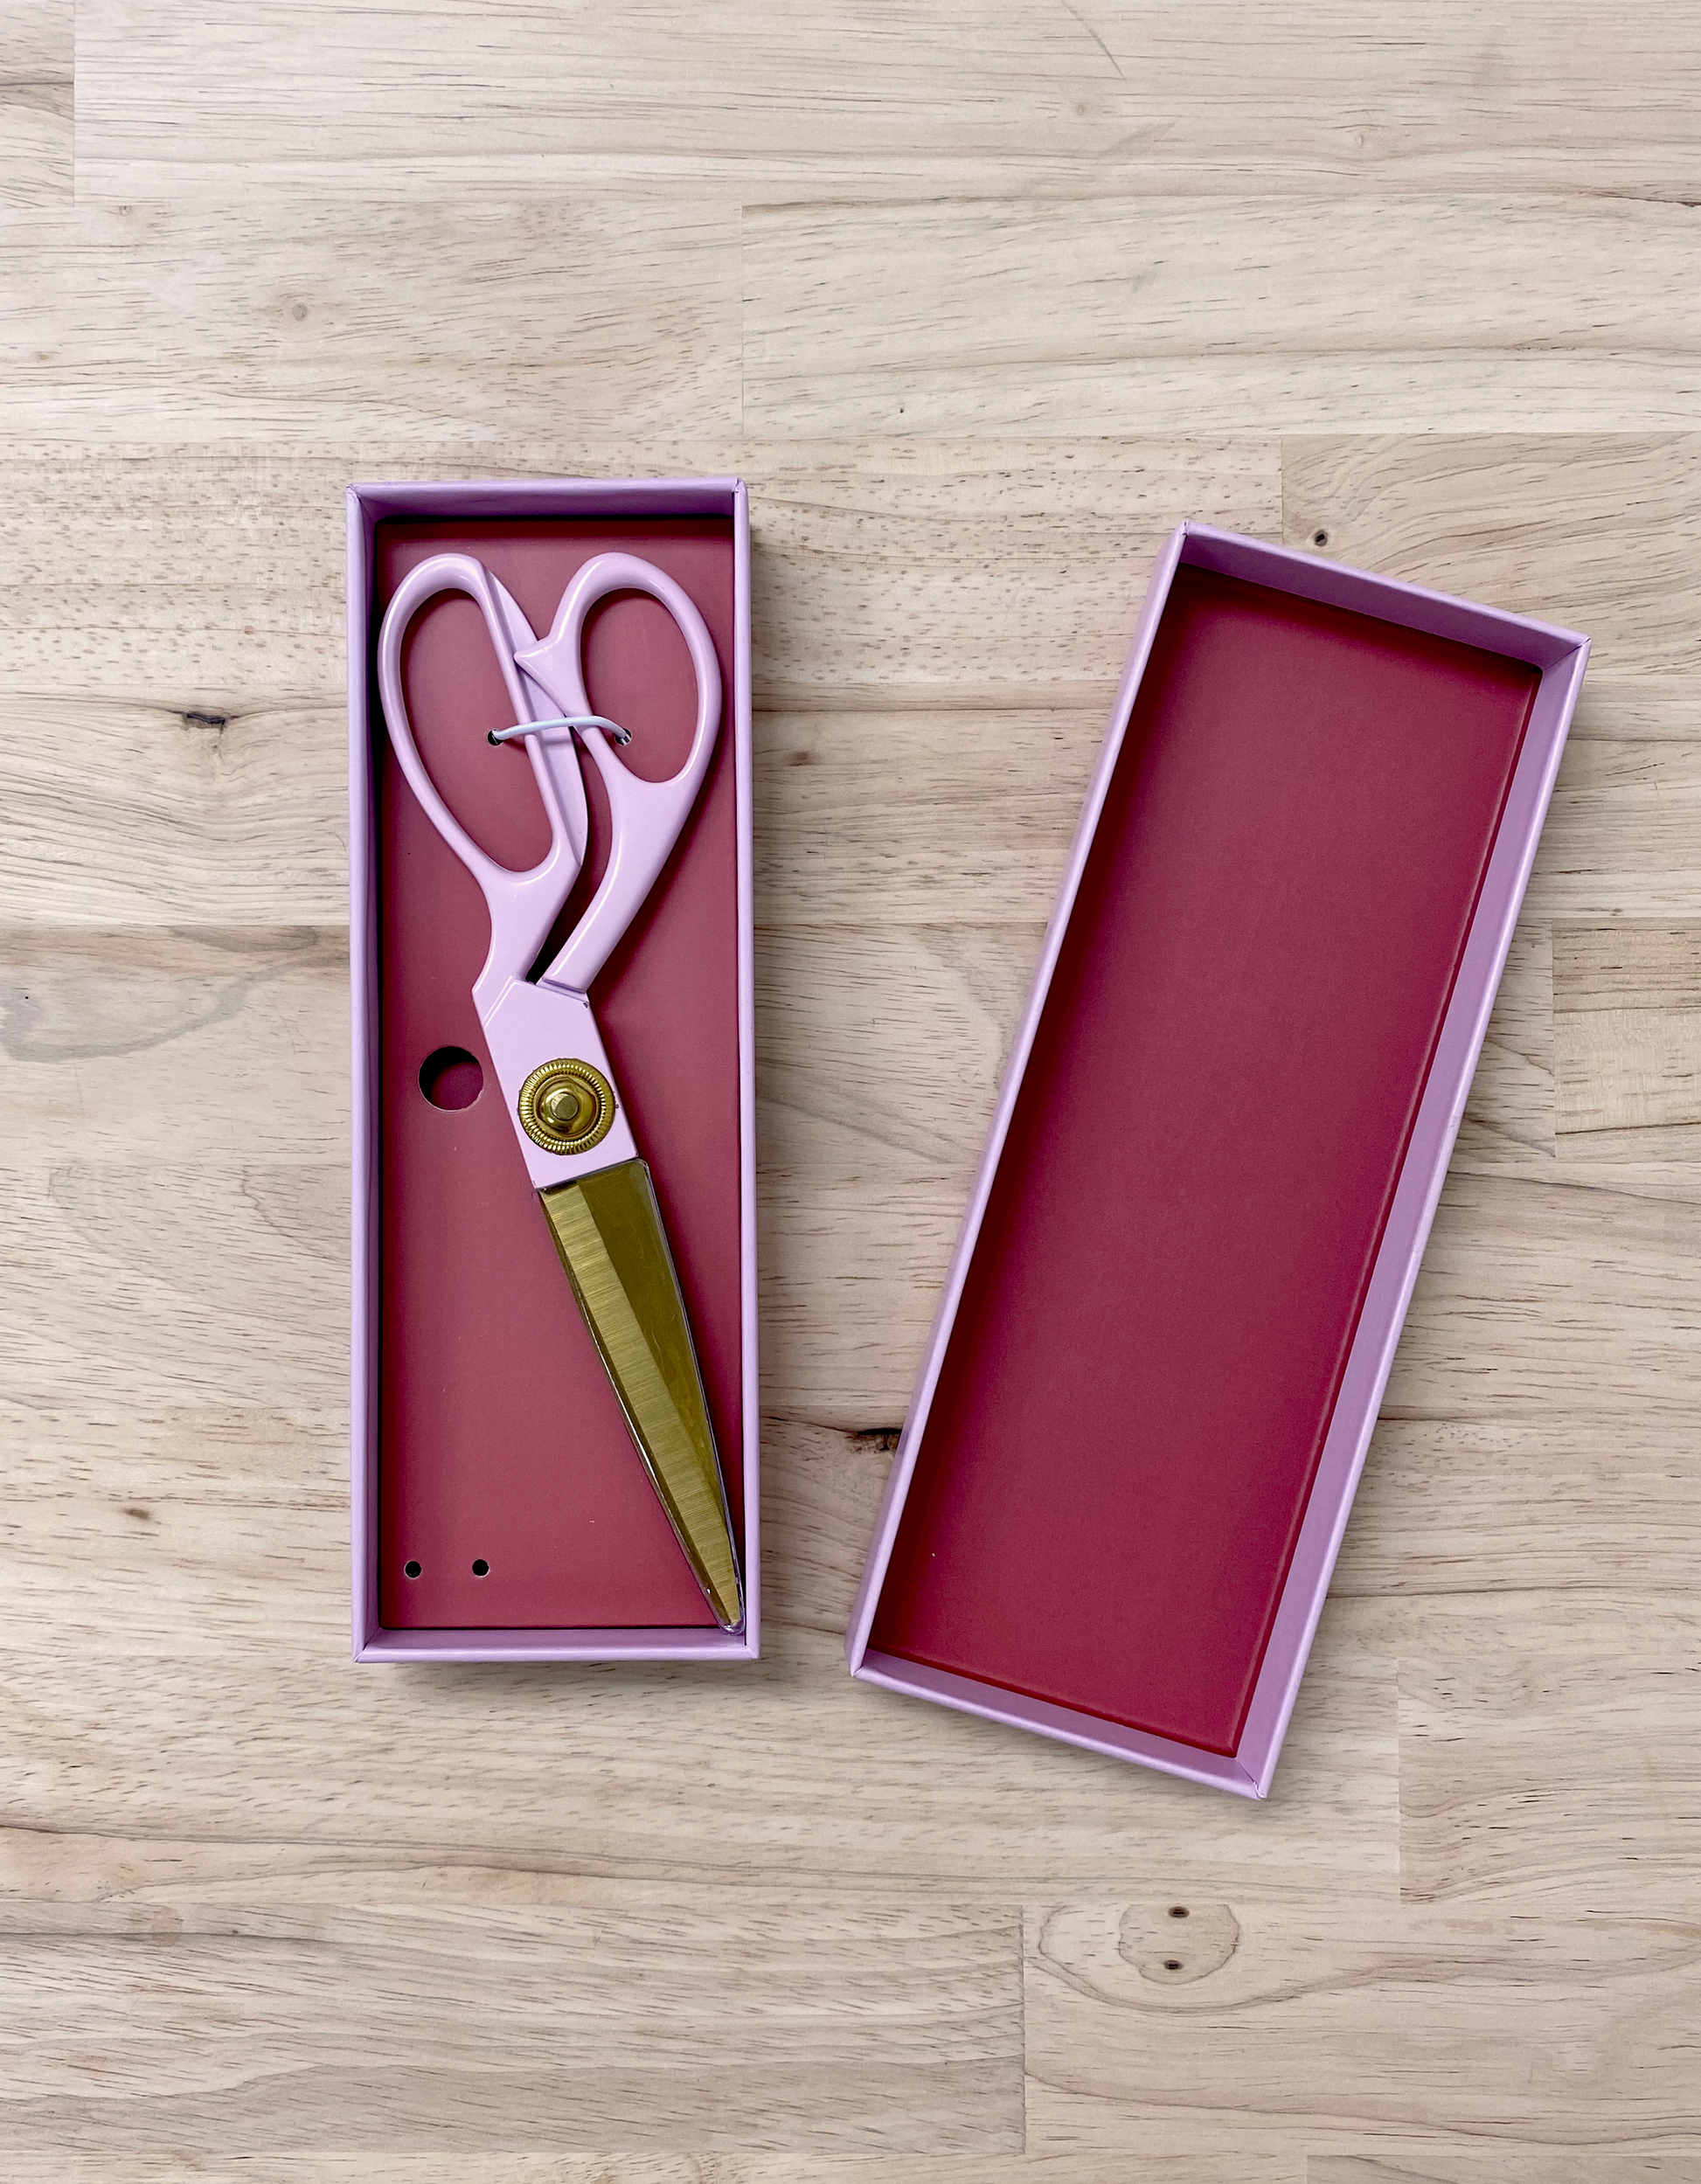 designer scissors